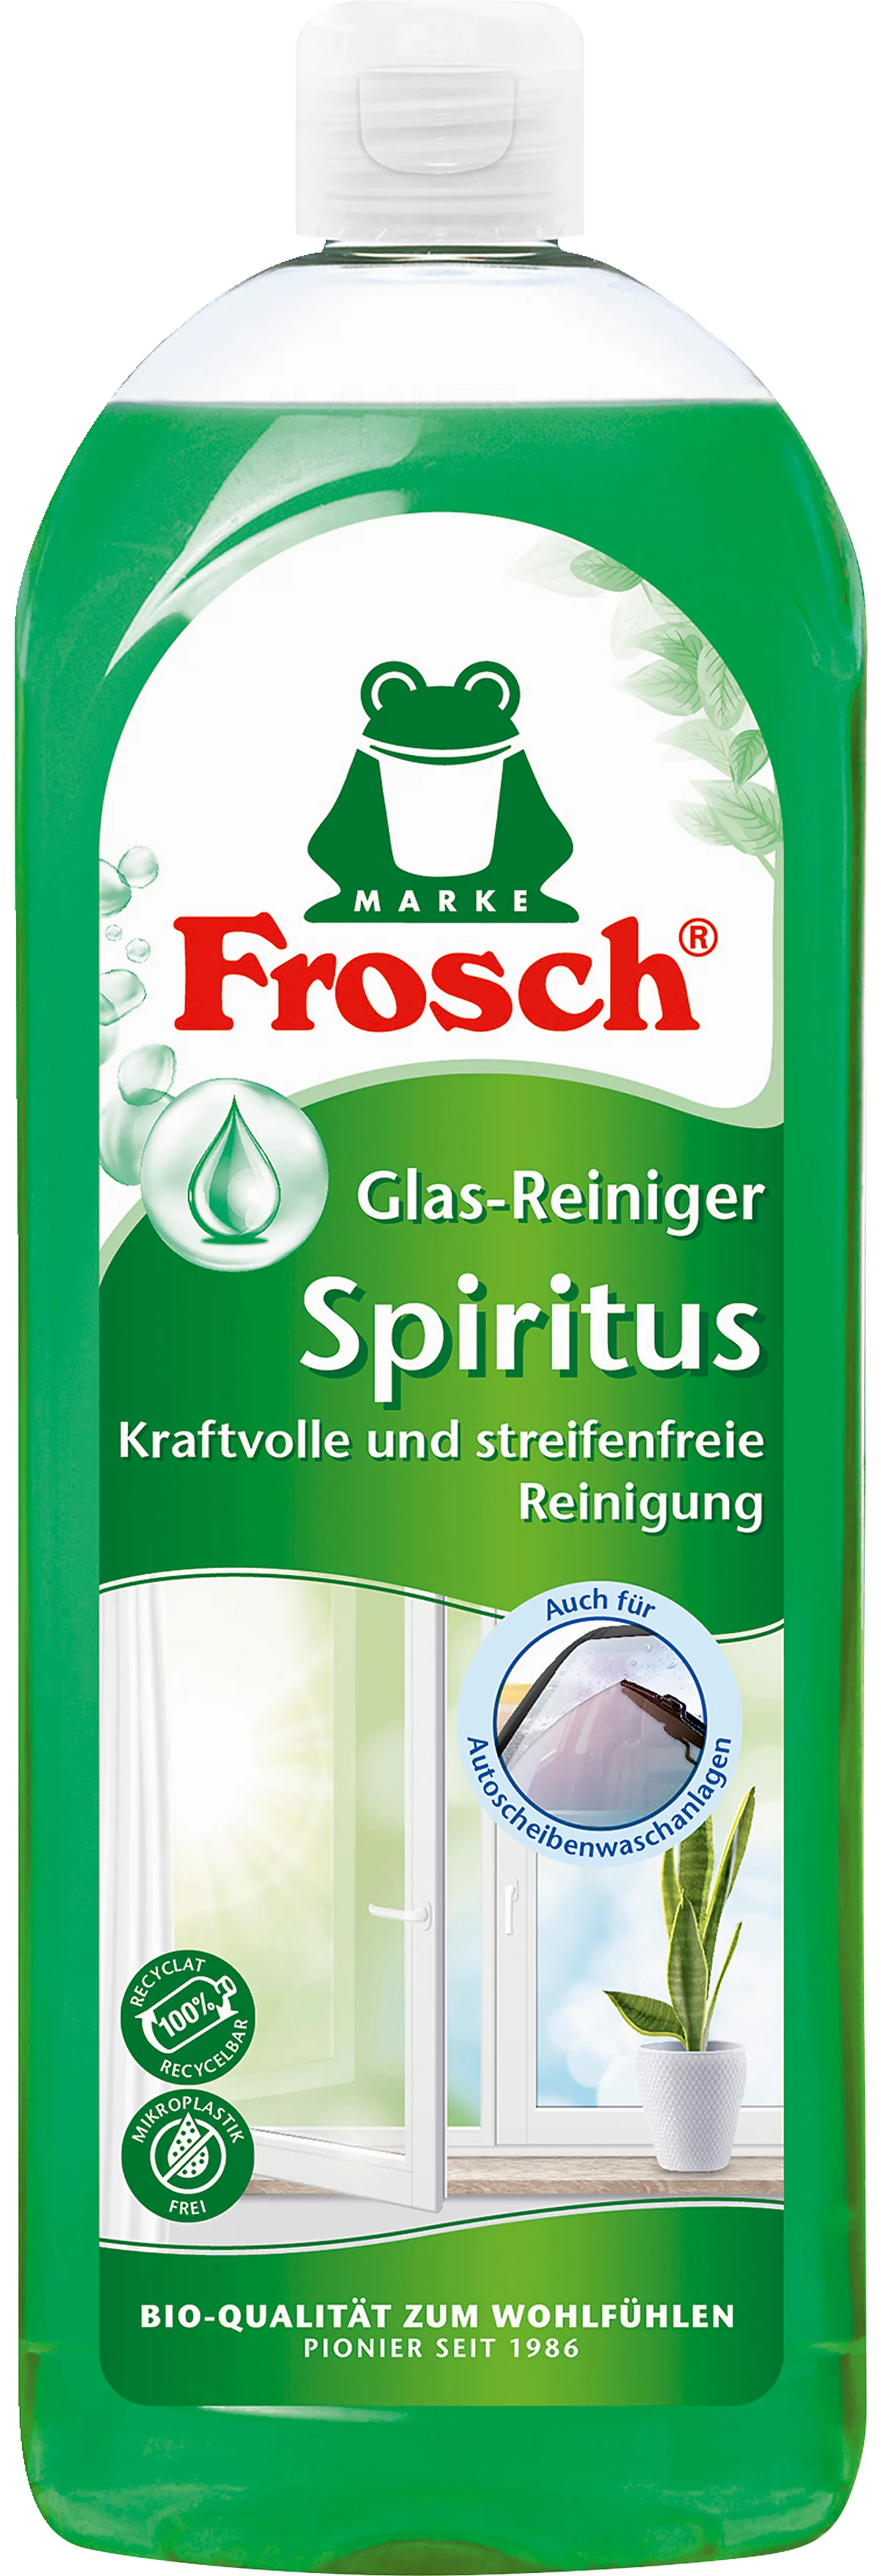 Glasreiniger Frosch Spiritus, grün, Flasche mit 750 ml o. 1 l